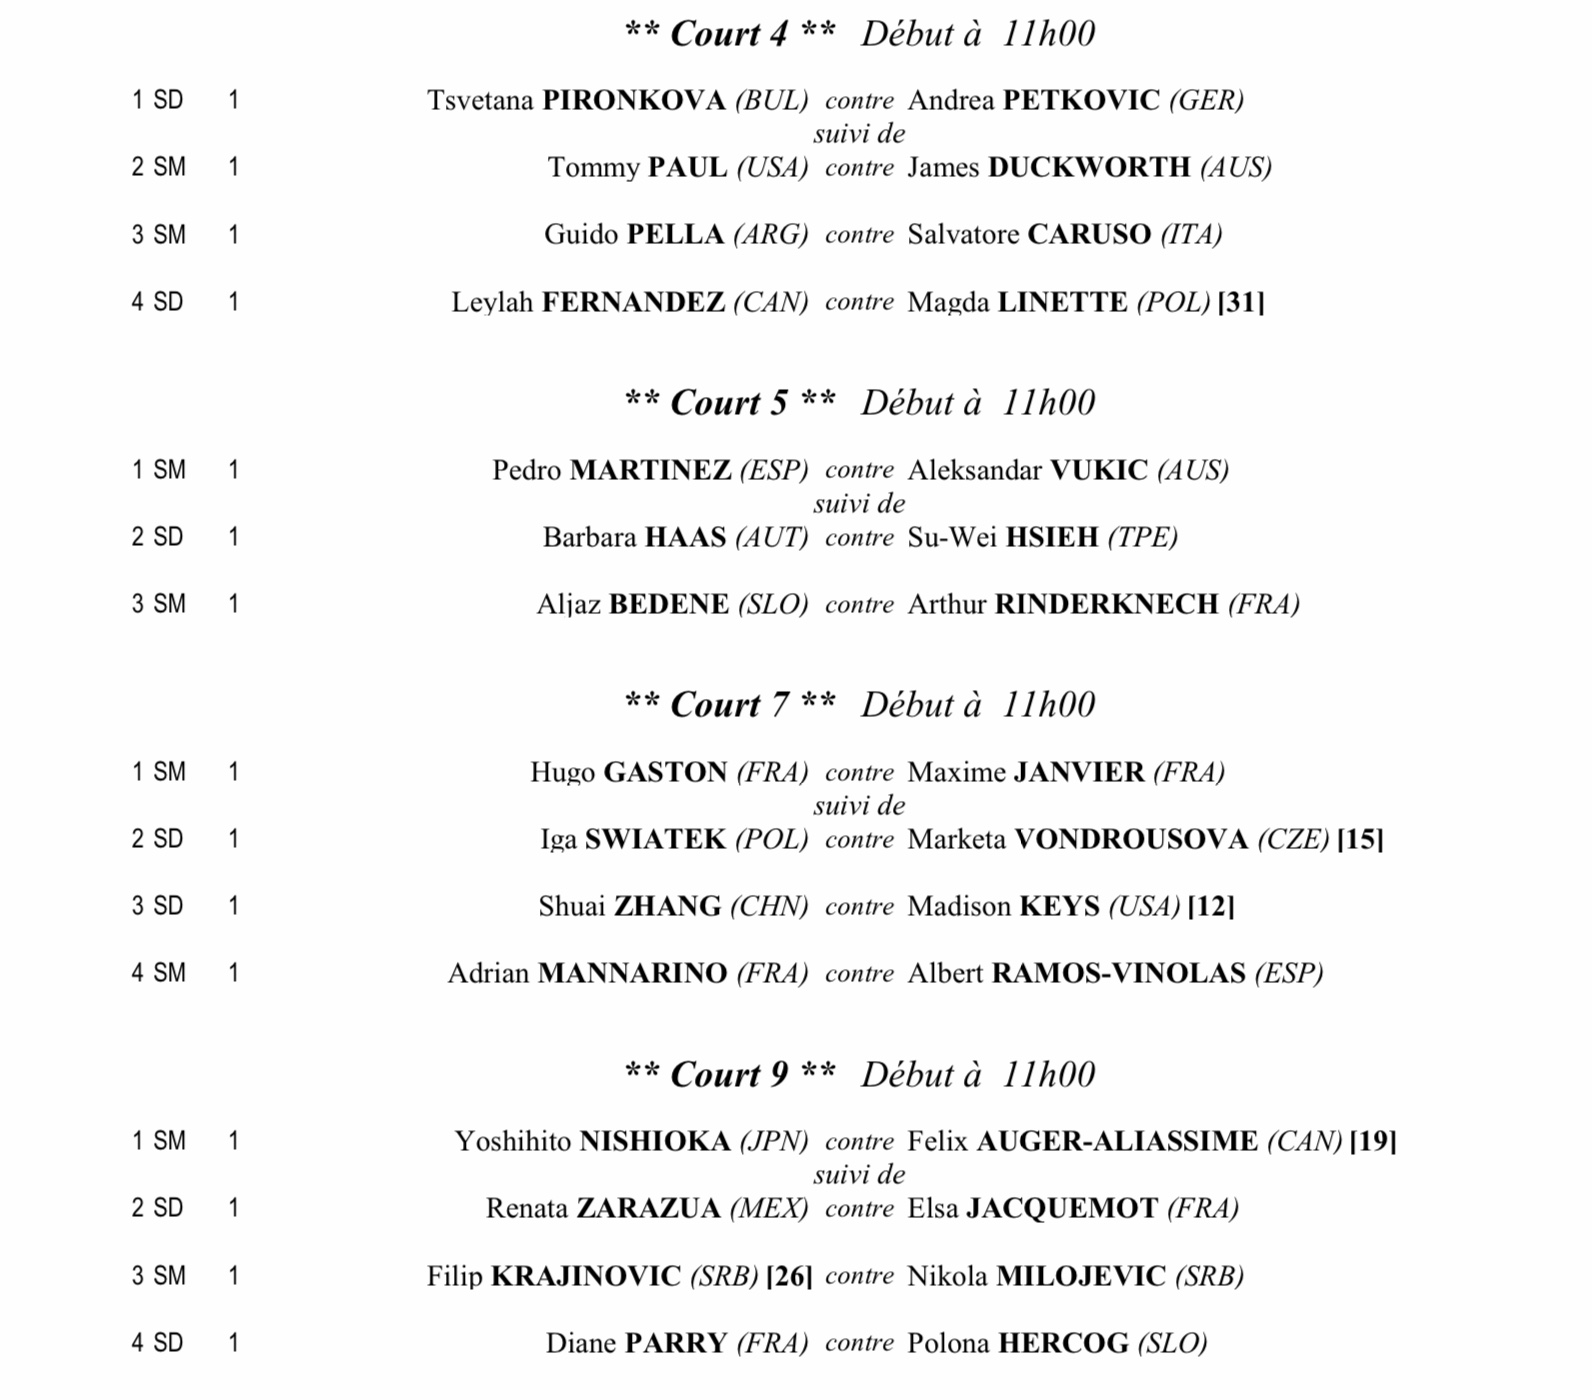 Roland Garros / French Open Women